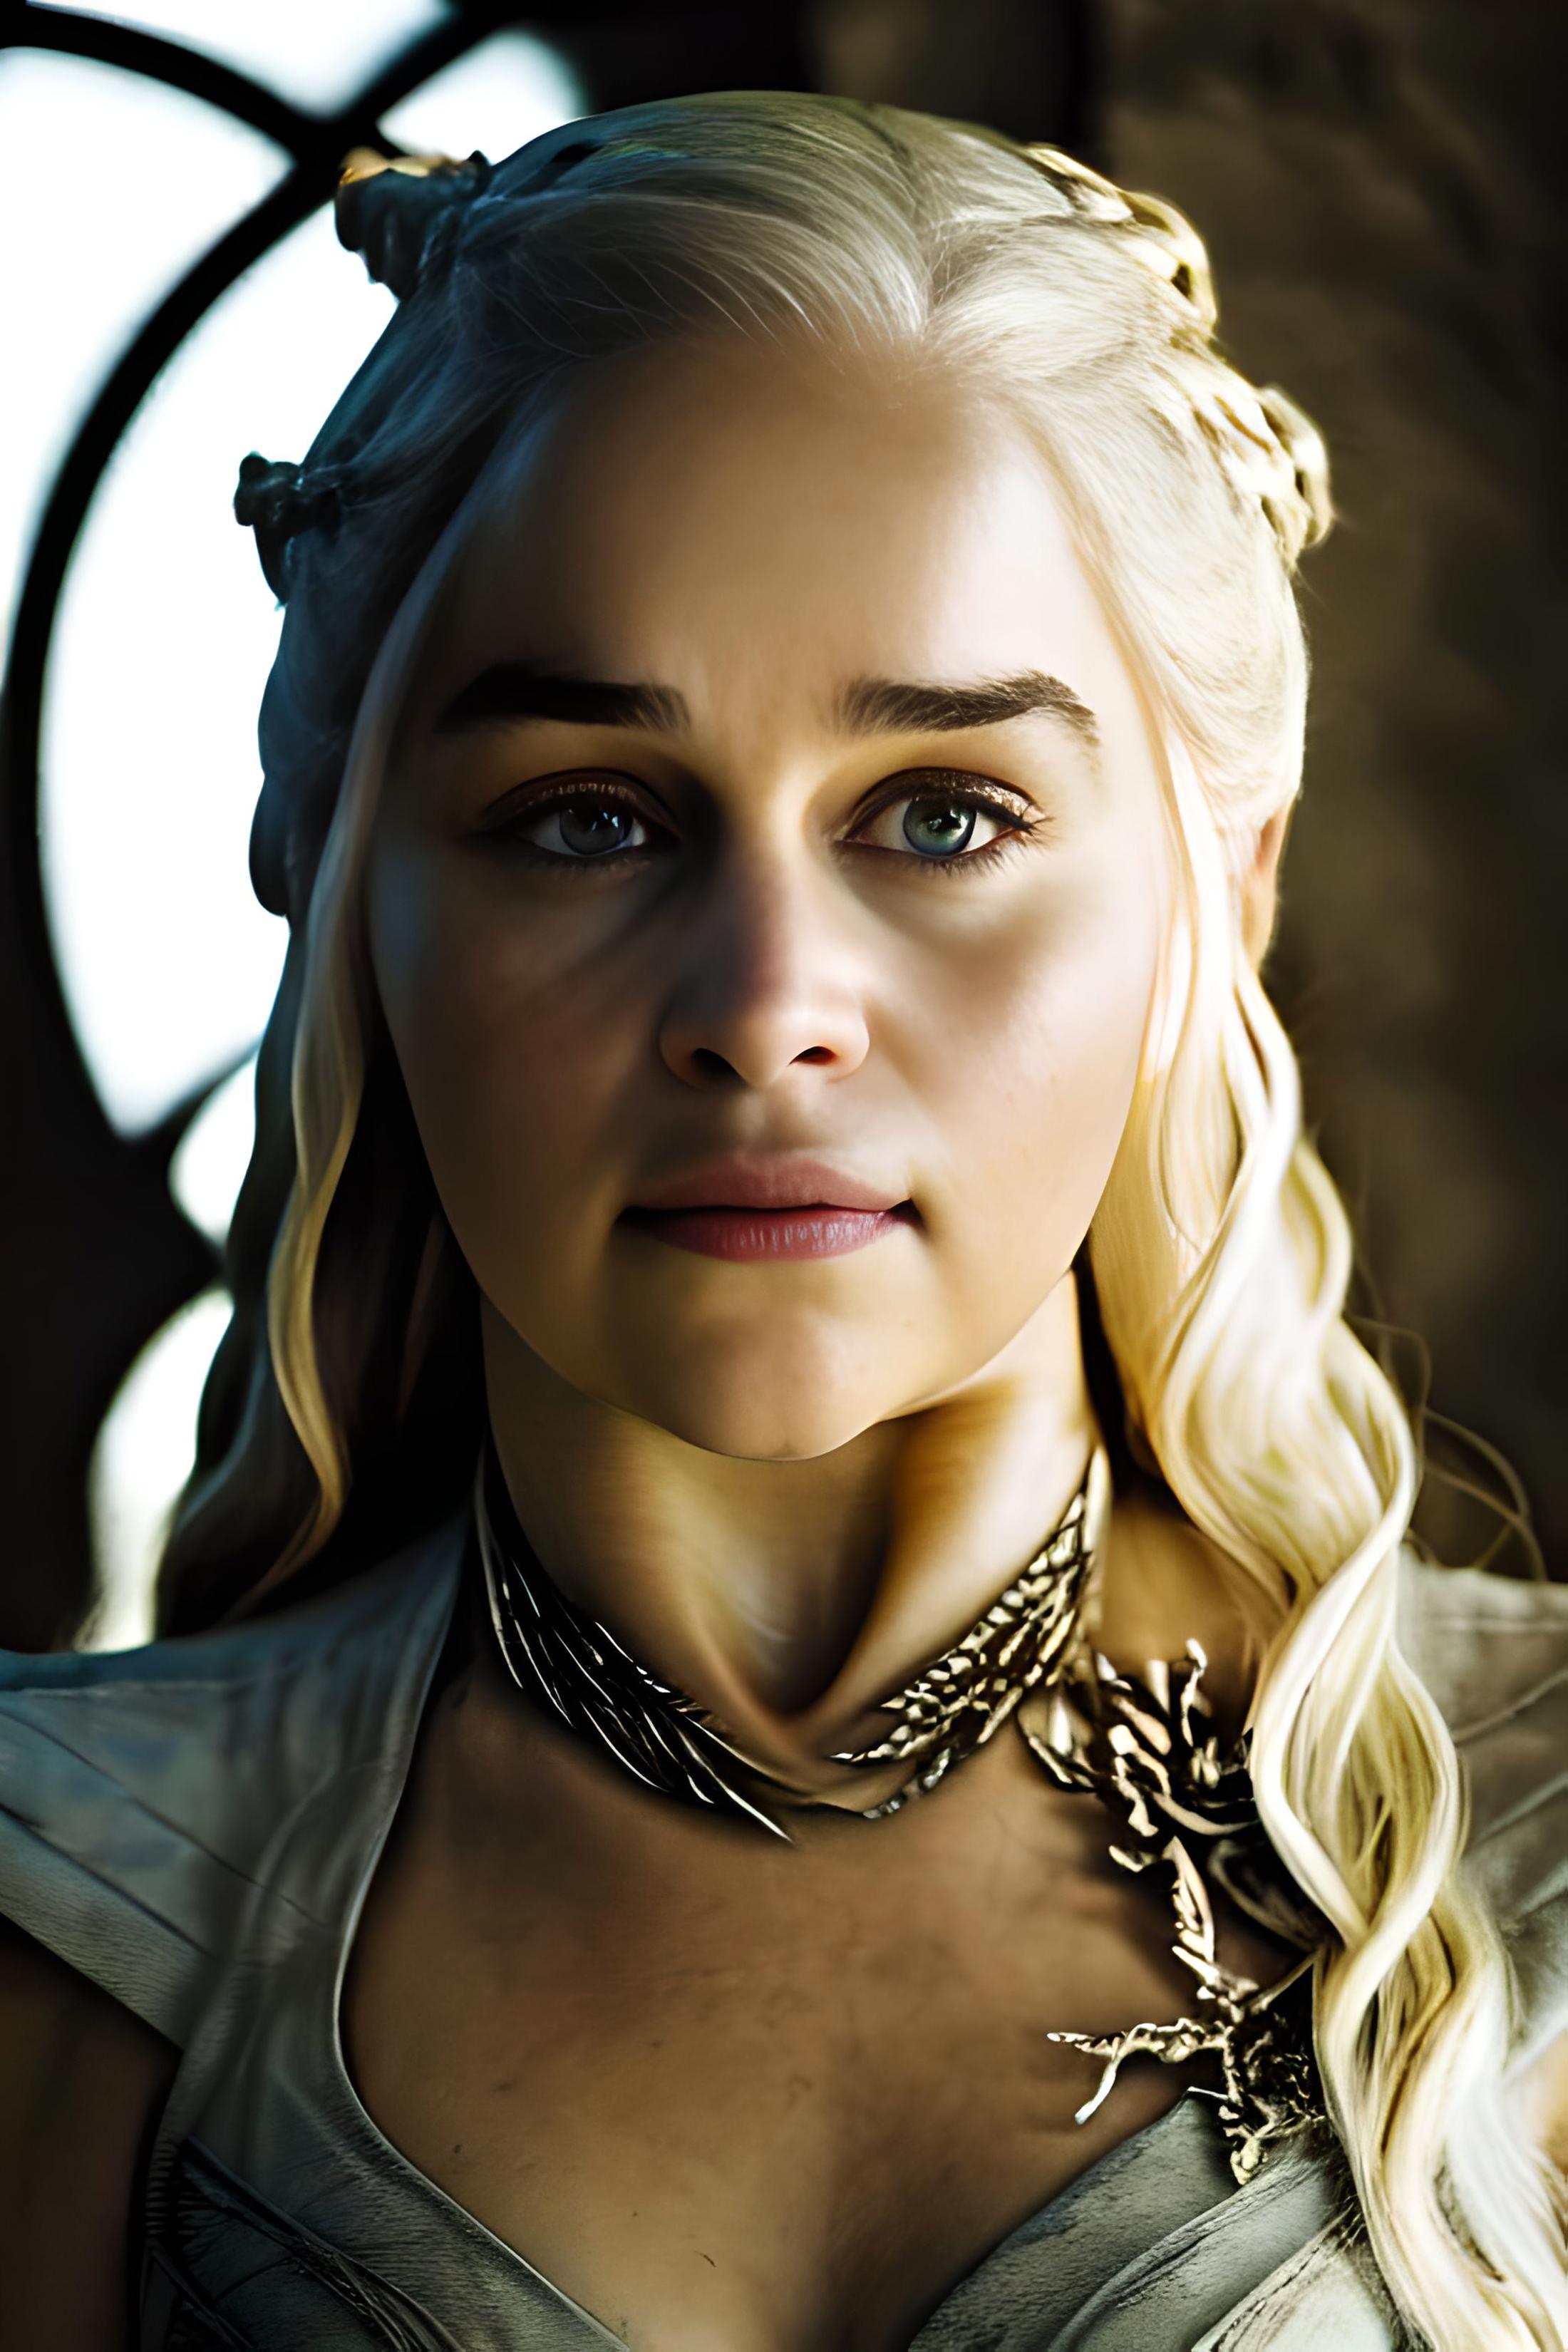 Daenerys Targaryen image by grtmate